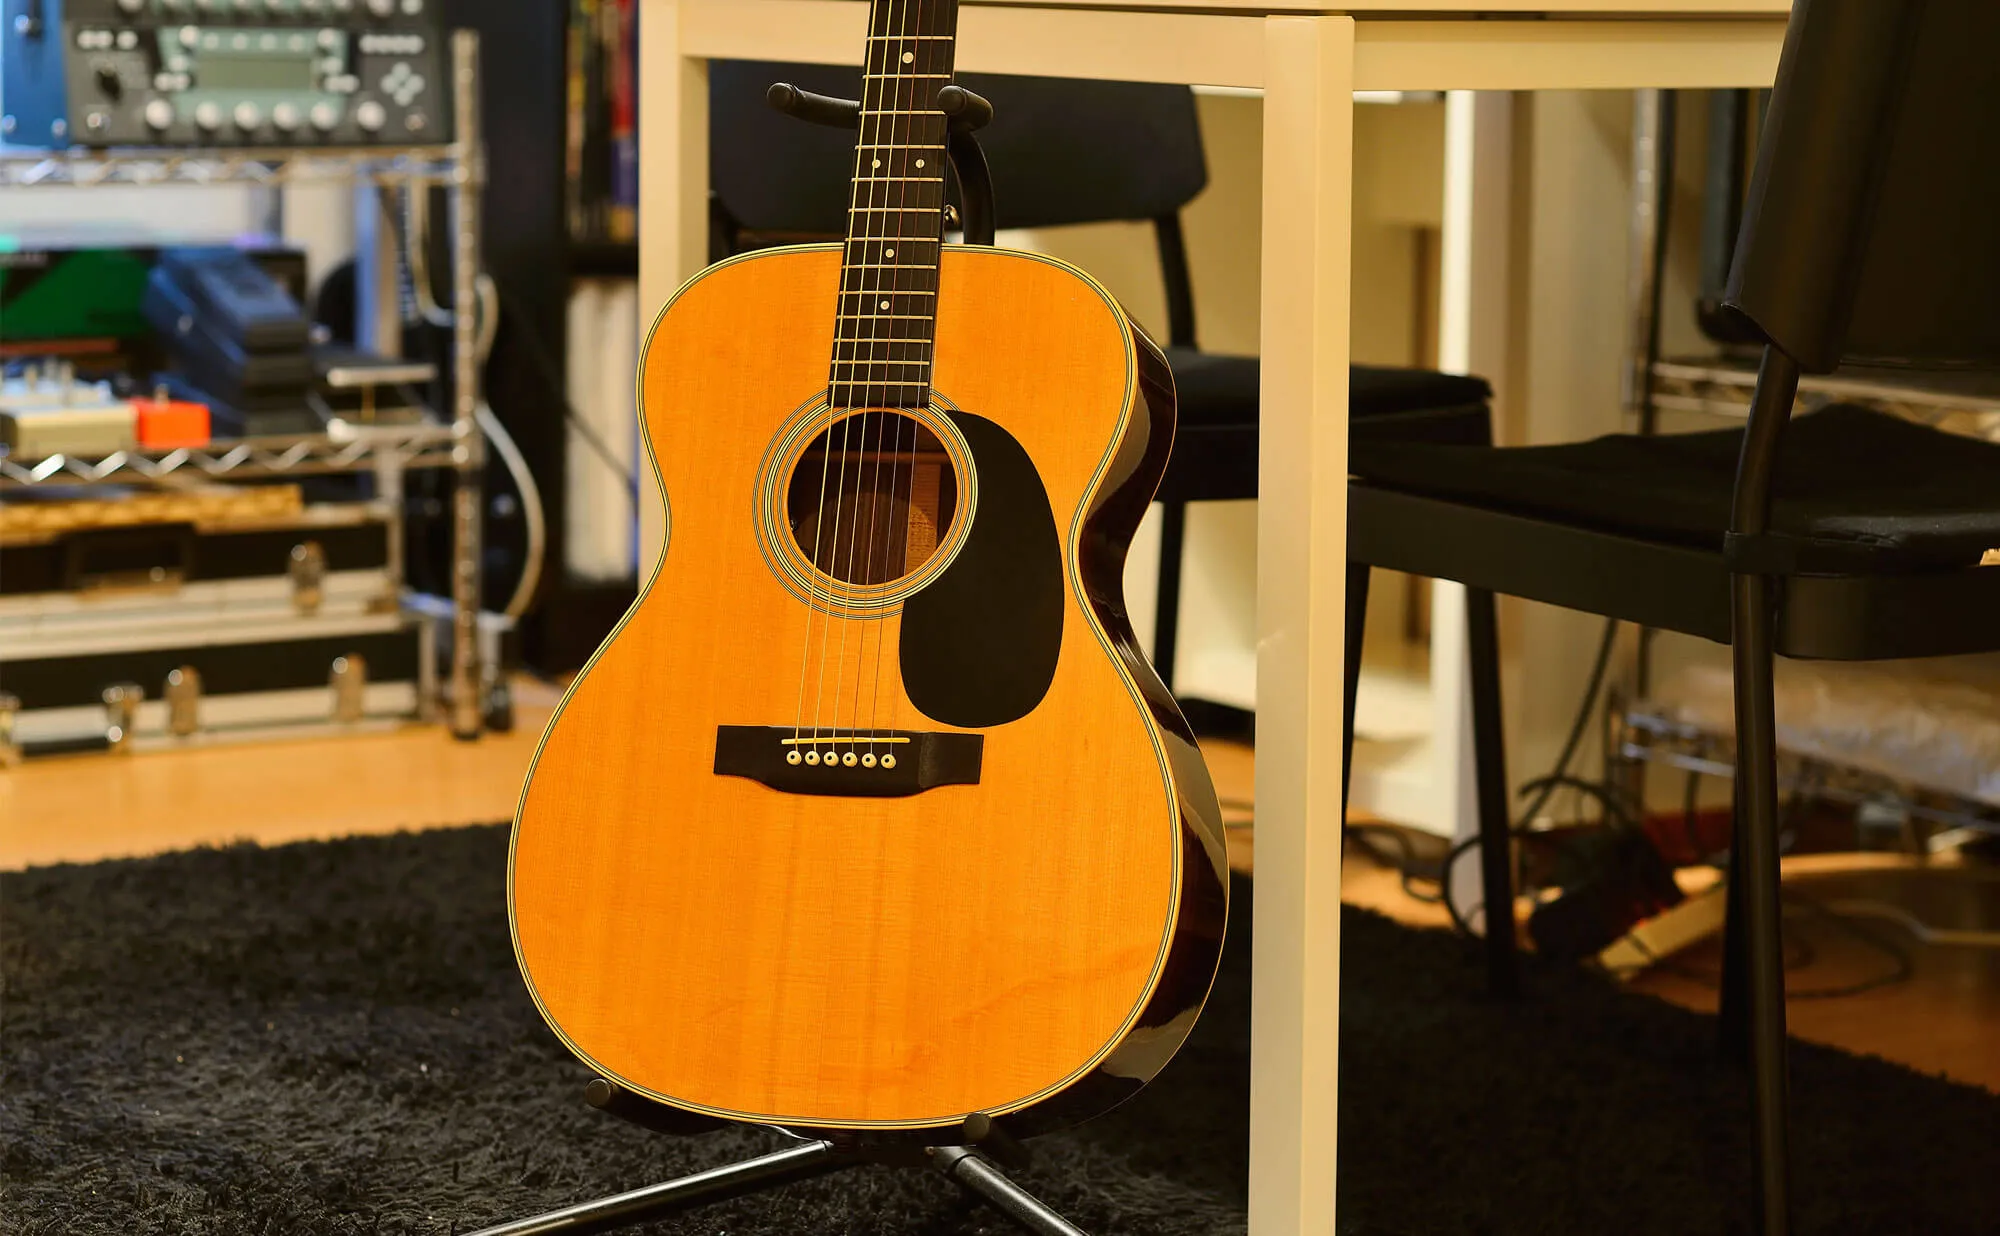 板橋ギター教室 | 60分完全個人レッスンのエルギタースクール